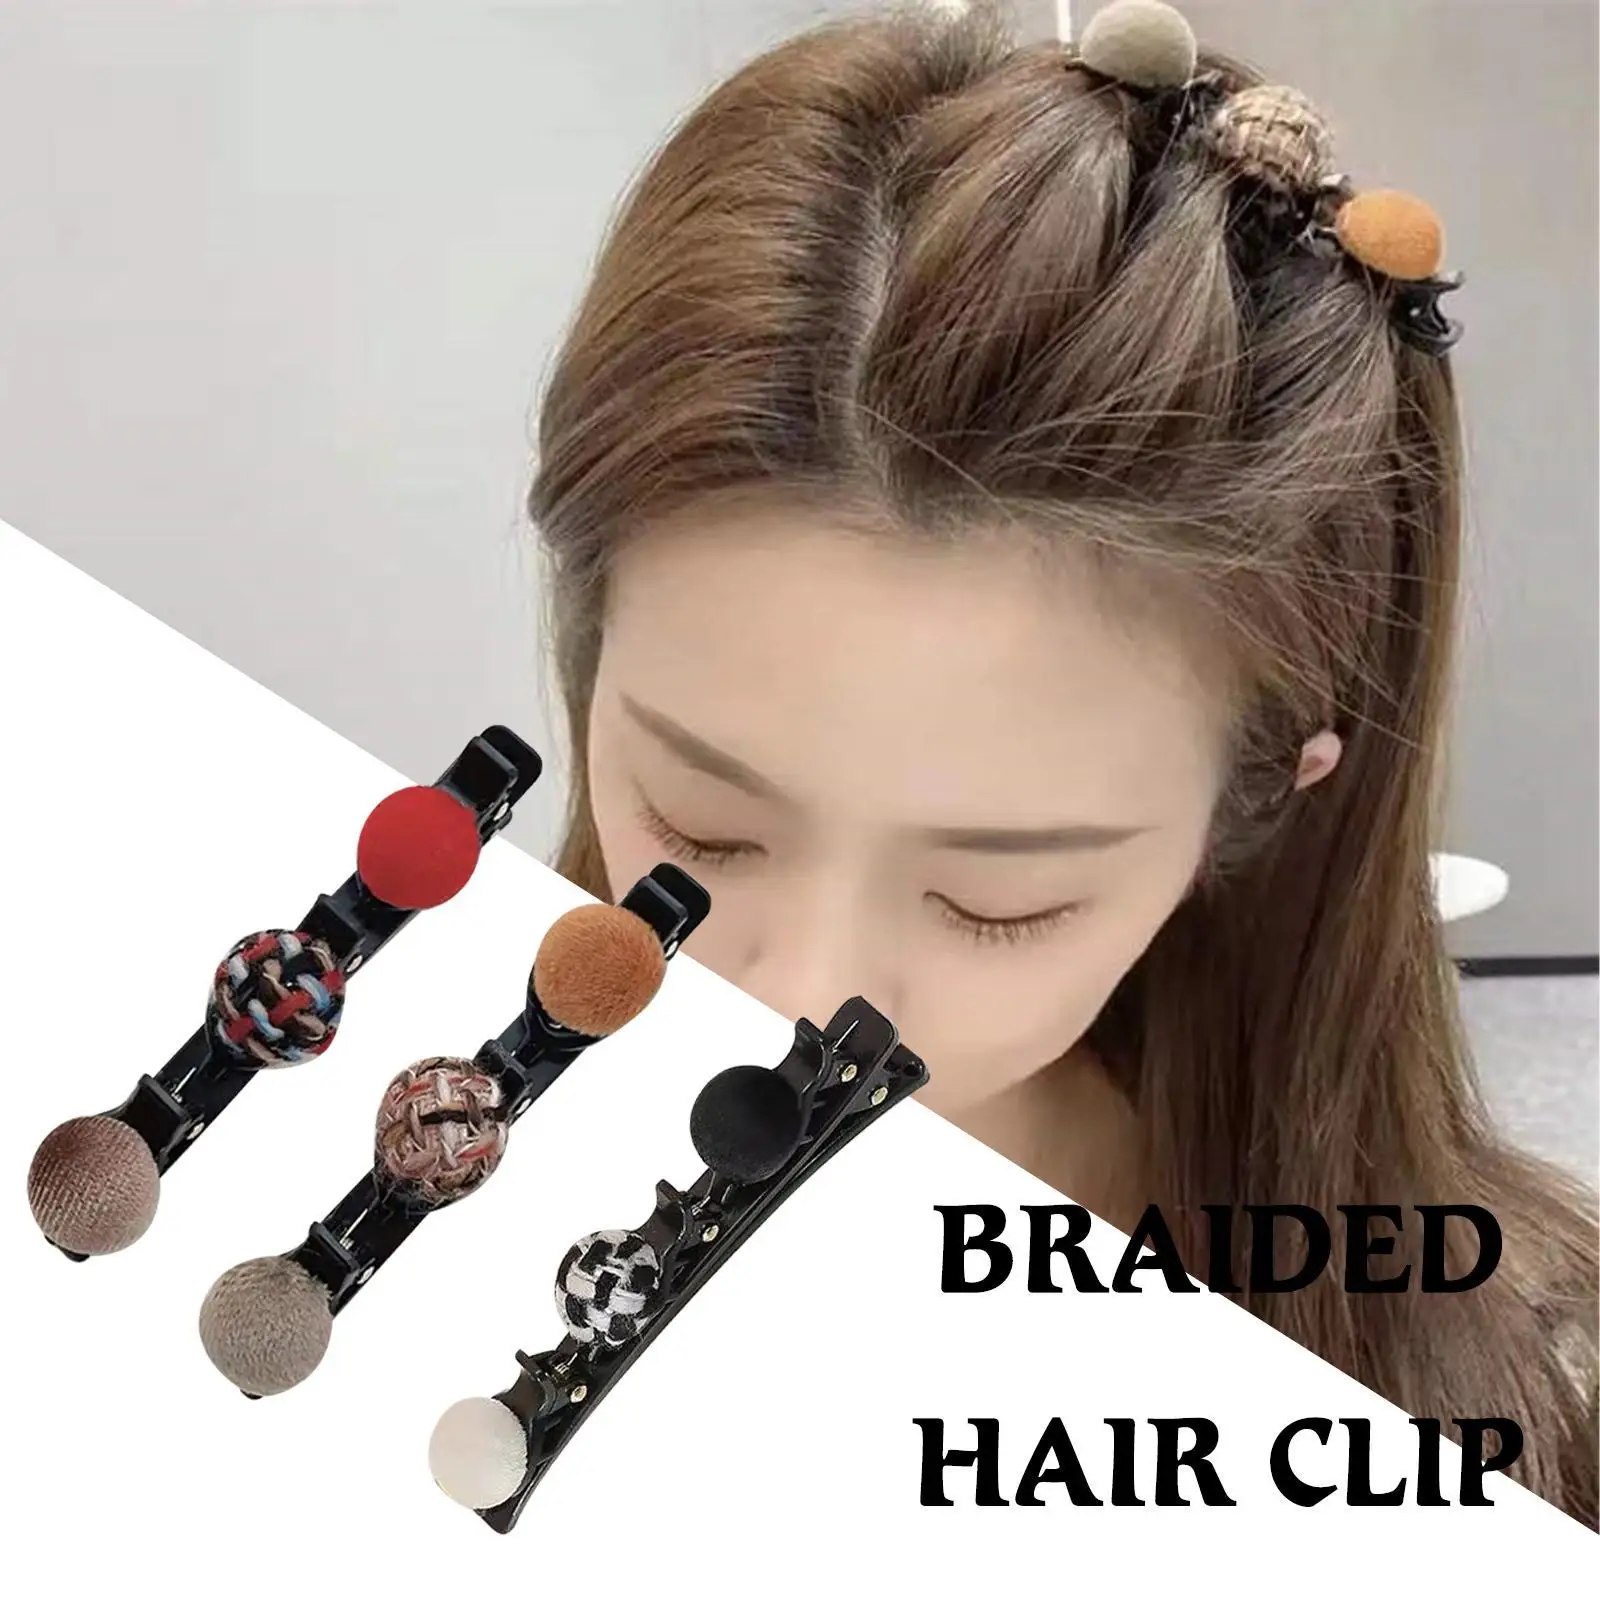 

Flocked Bangs Hair Clip Black Headwear Women Cute Barrettes Hairgrip Alice Braided Fashion Hairpins Hair Accessories